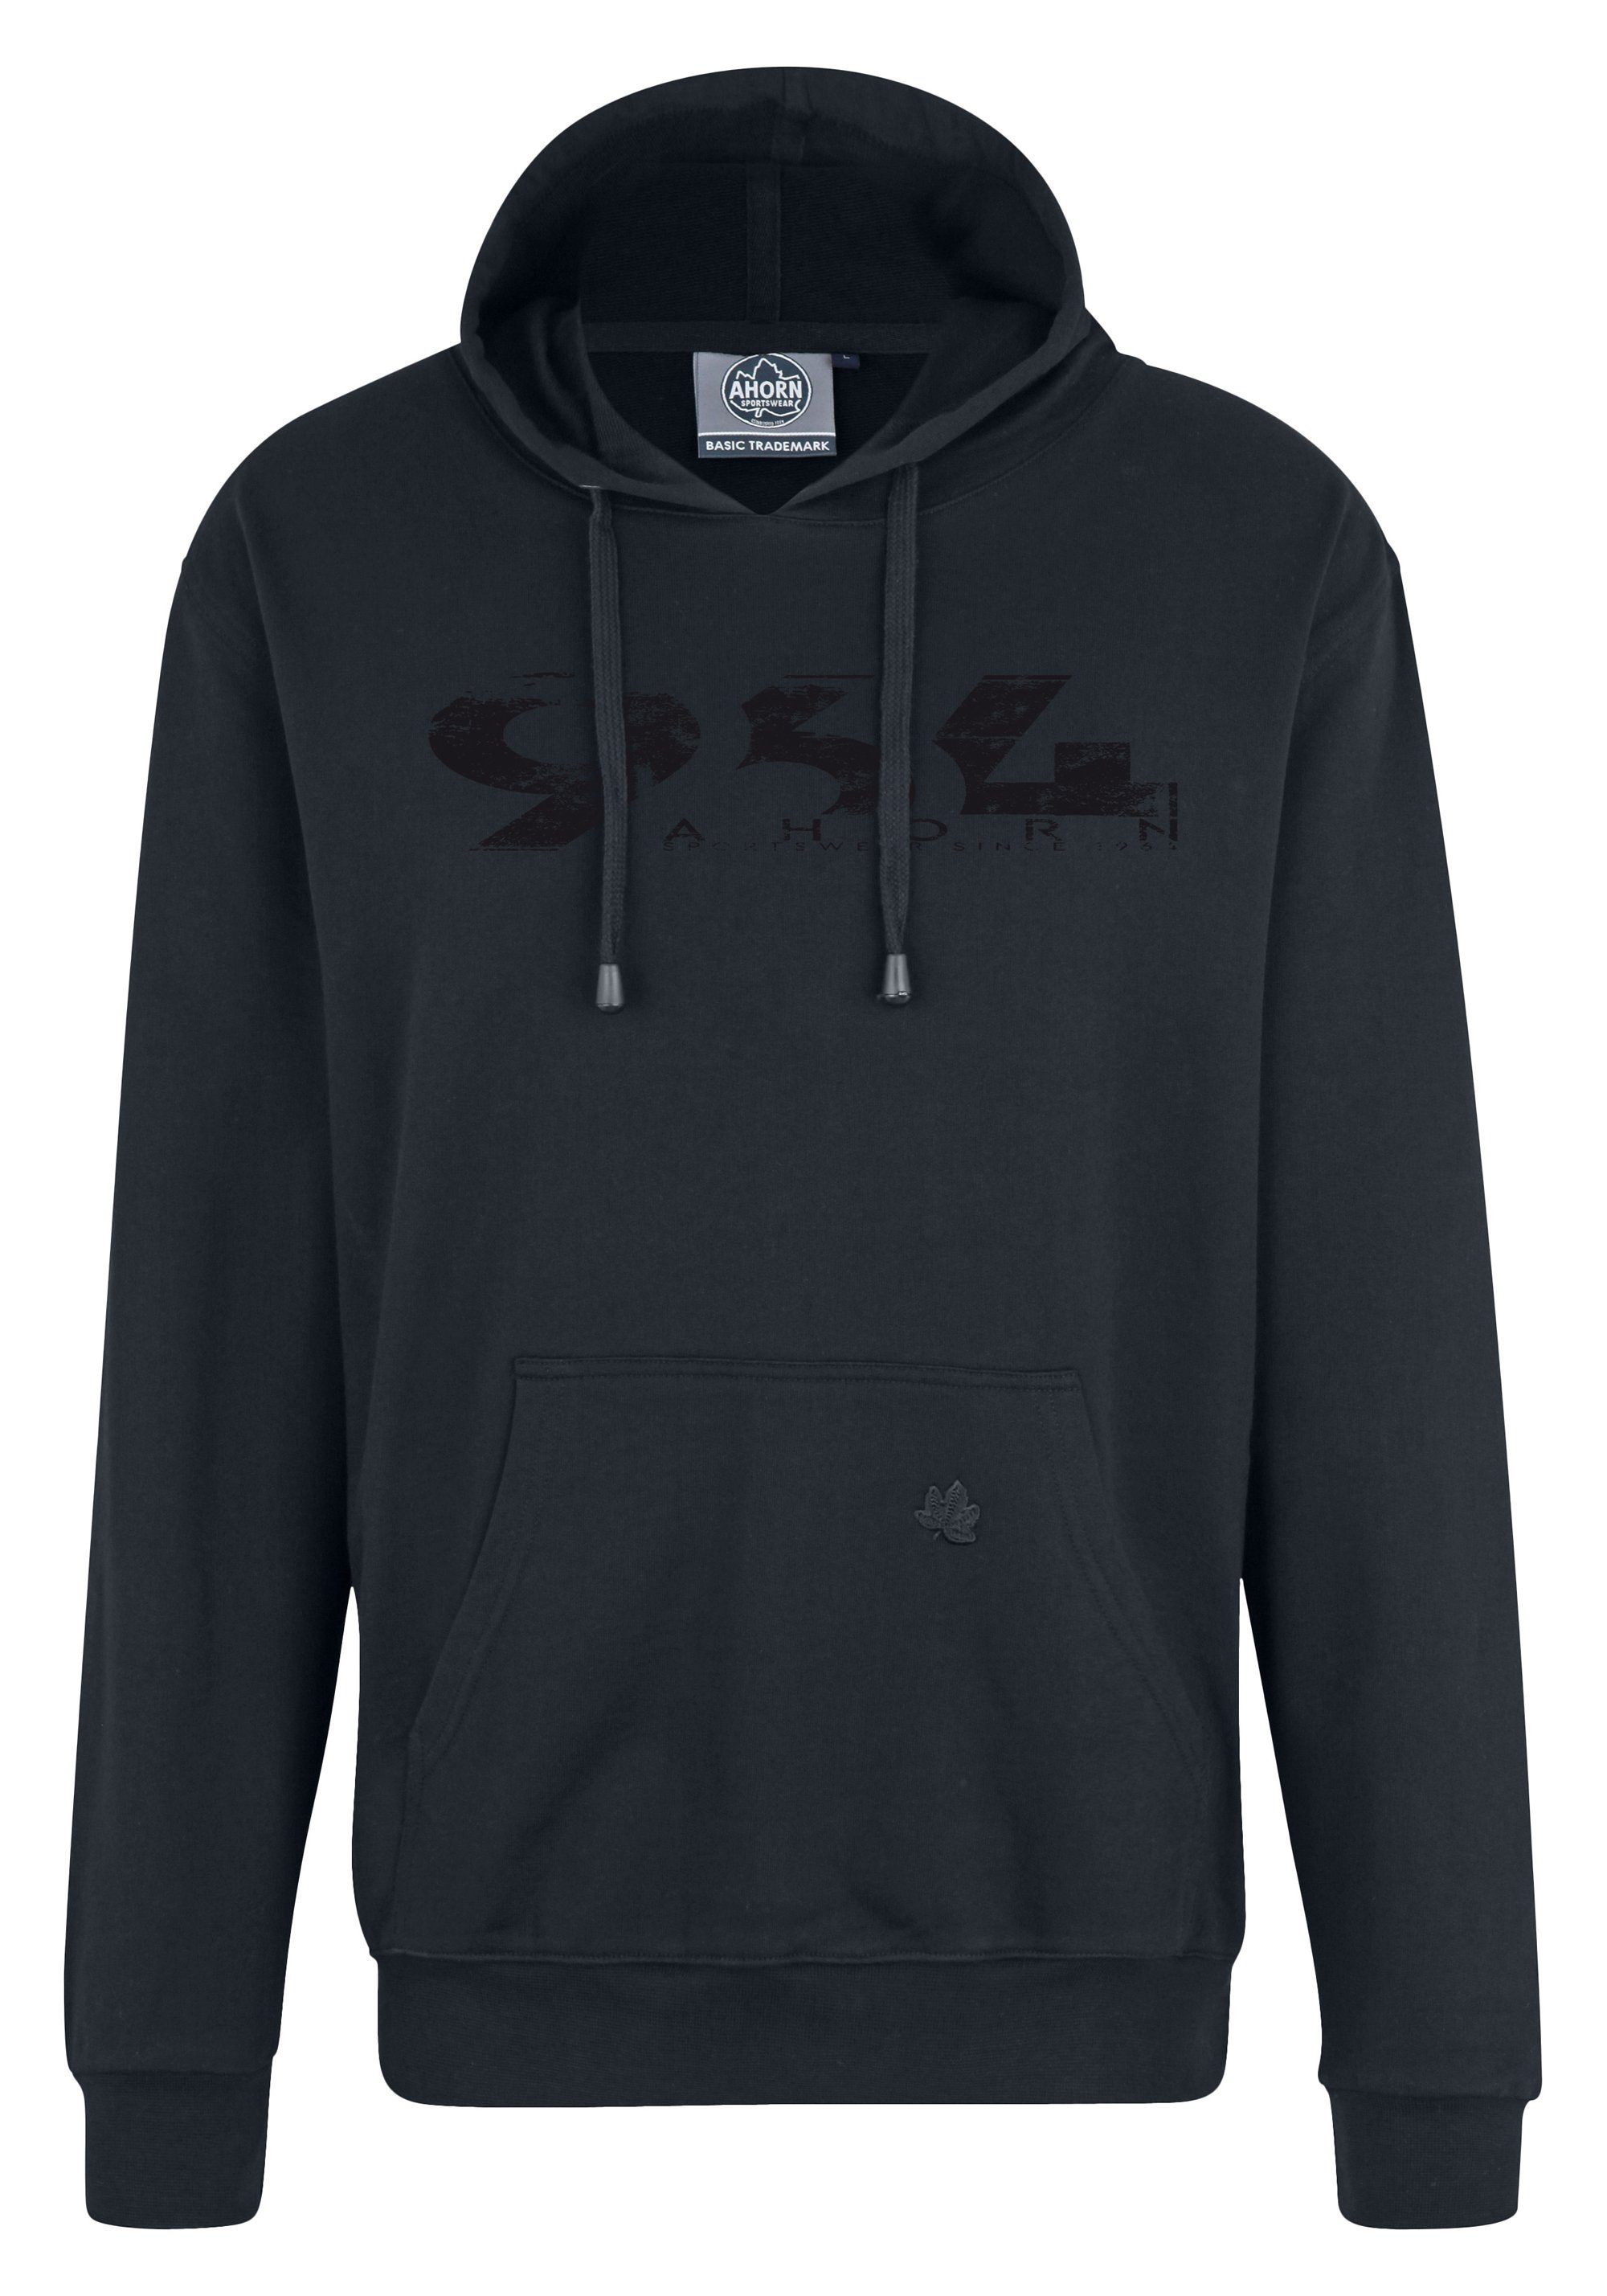 AHORN SPORTSWEAR Kapuzensweatshirt 964_BLACK mit modischem Print anthrazit | Sweatshirts